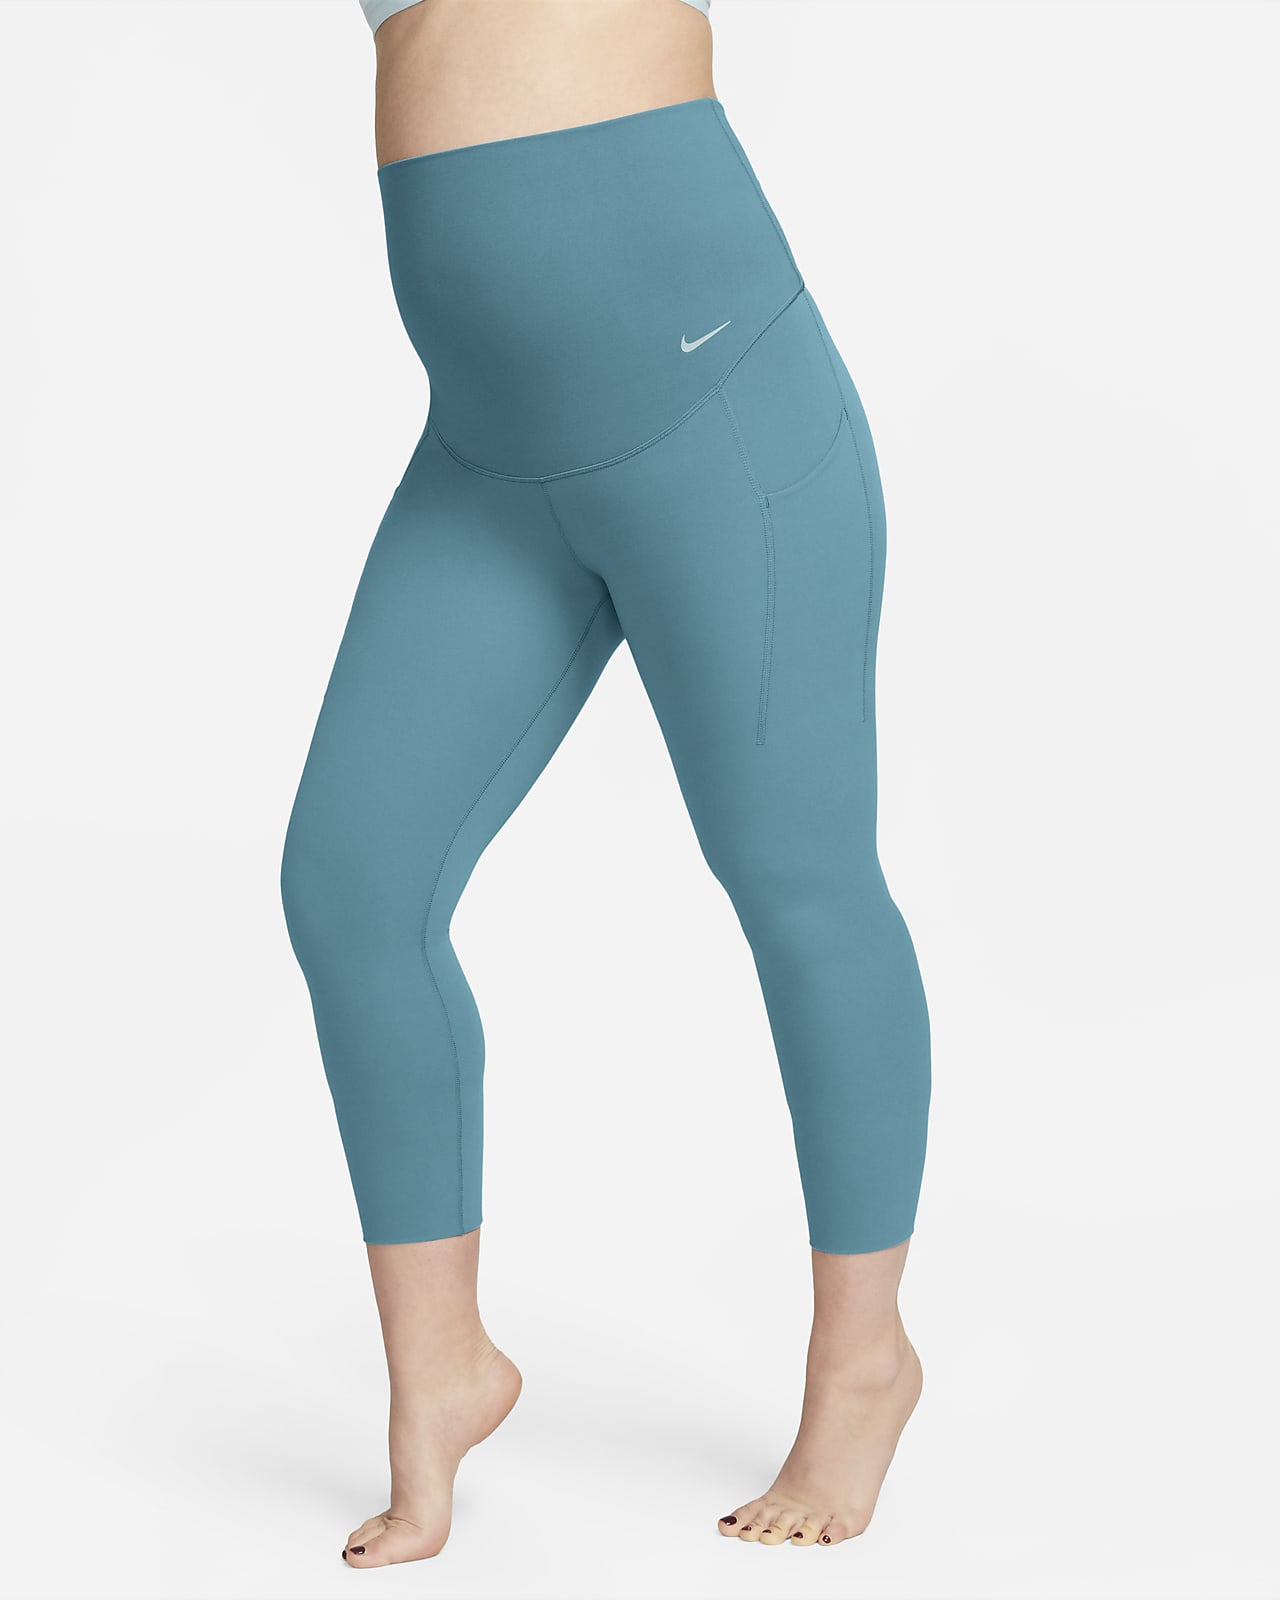 Nike Women's Zenvy (M) Gentle-Support High-Waisted 7/8 Leggings